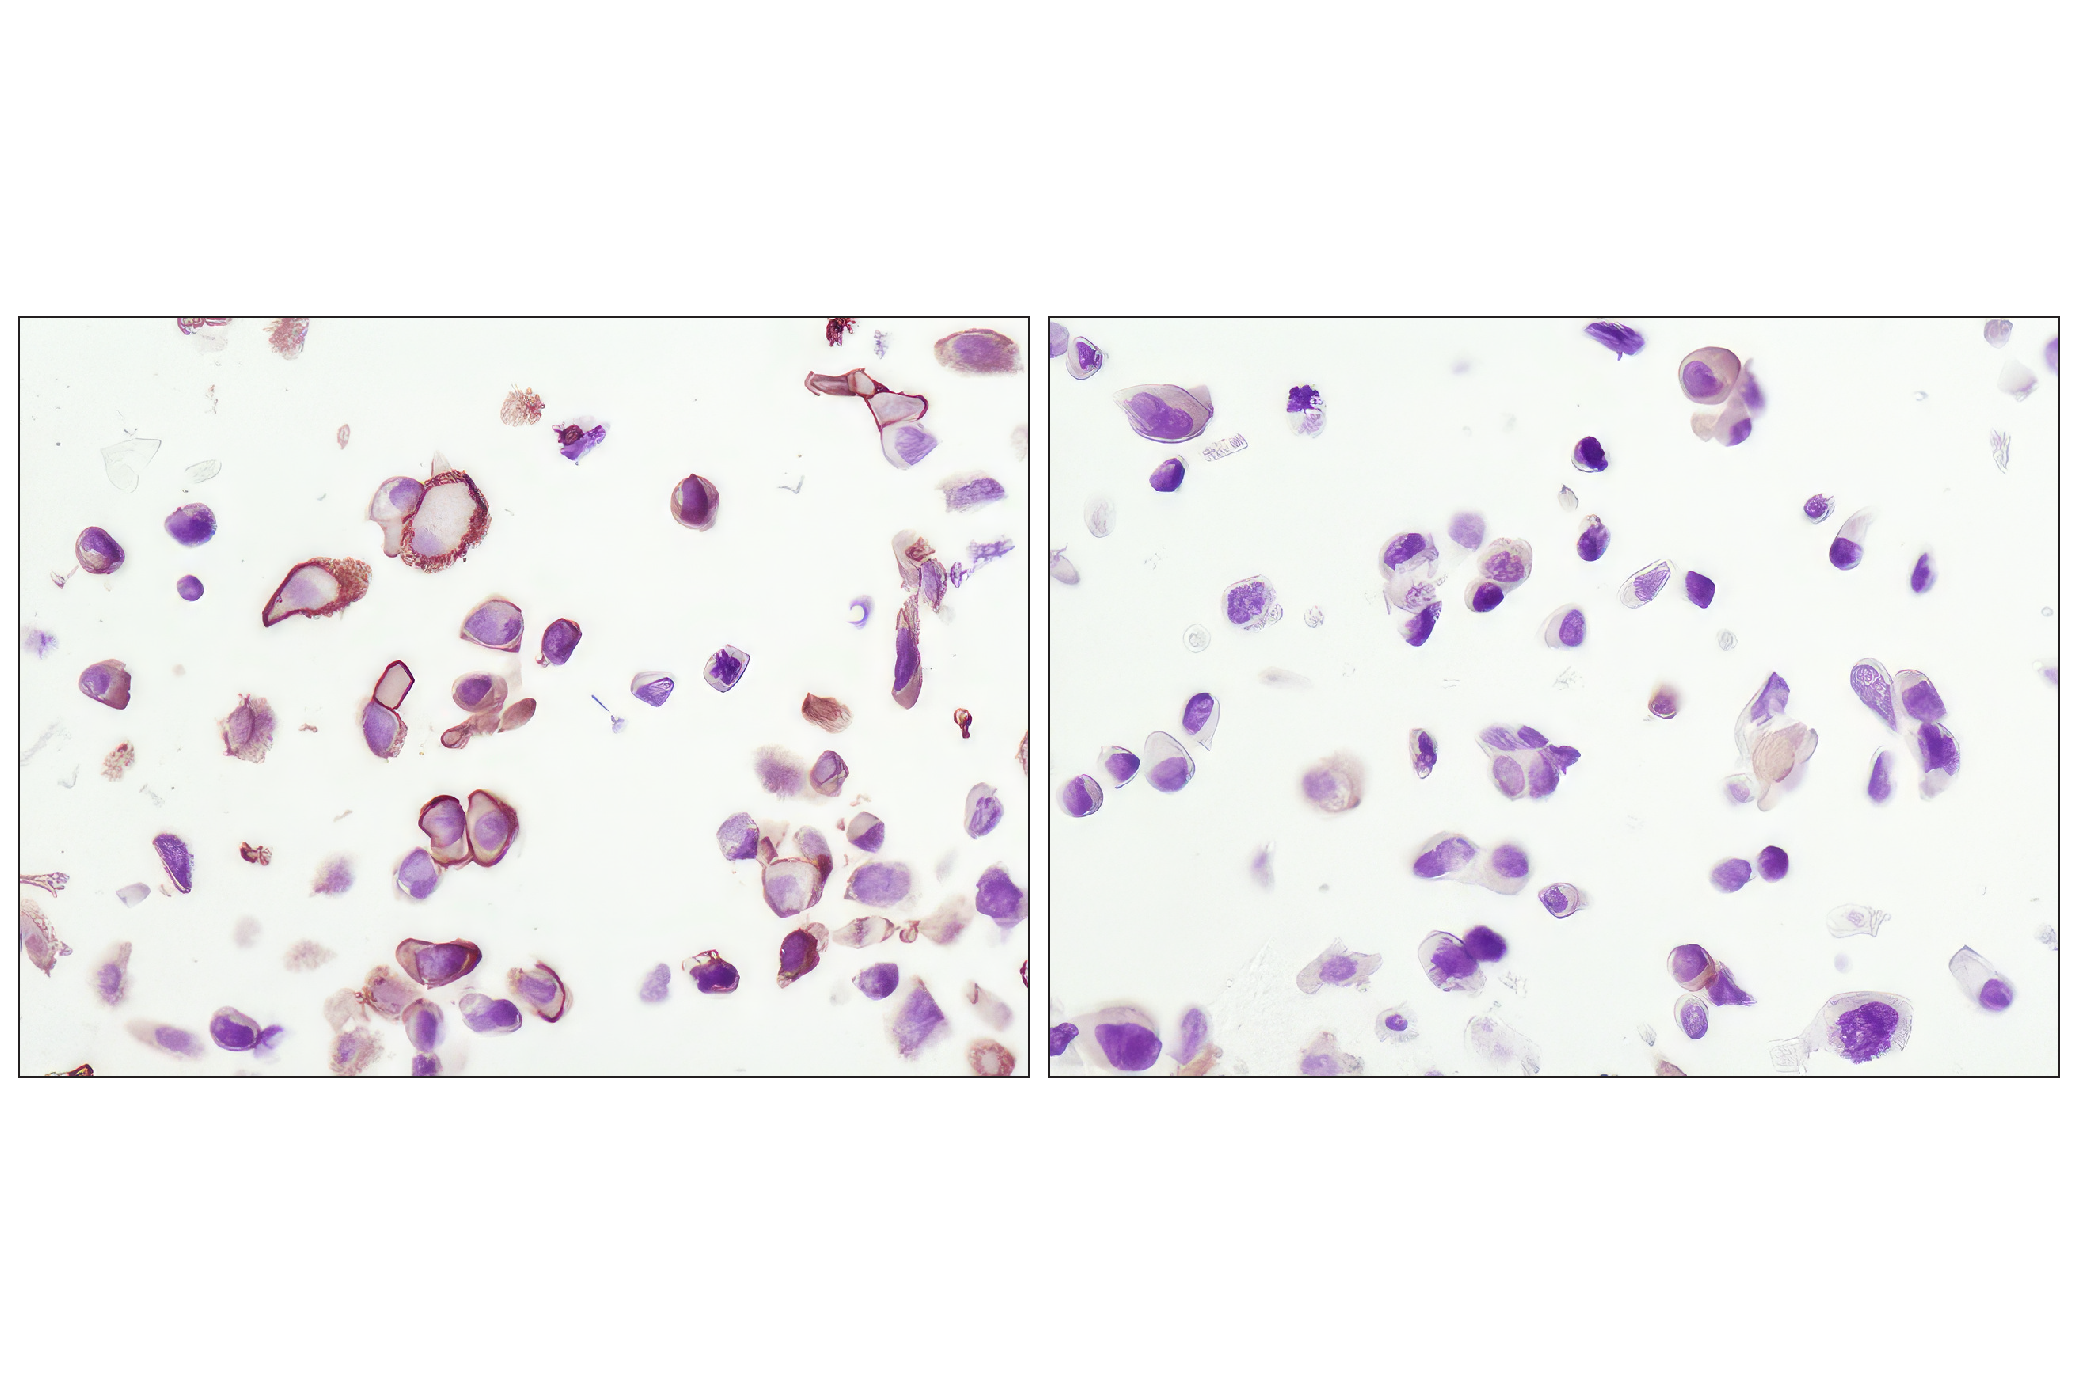  Image 26: AS160 Signaling Antibody Sampler Kit